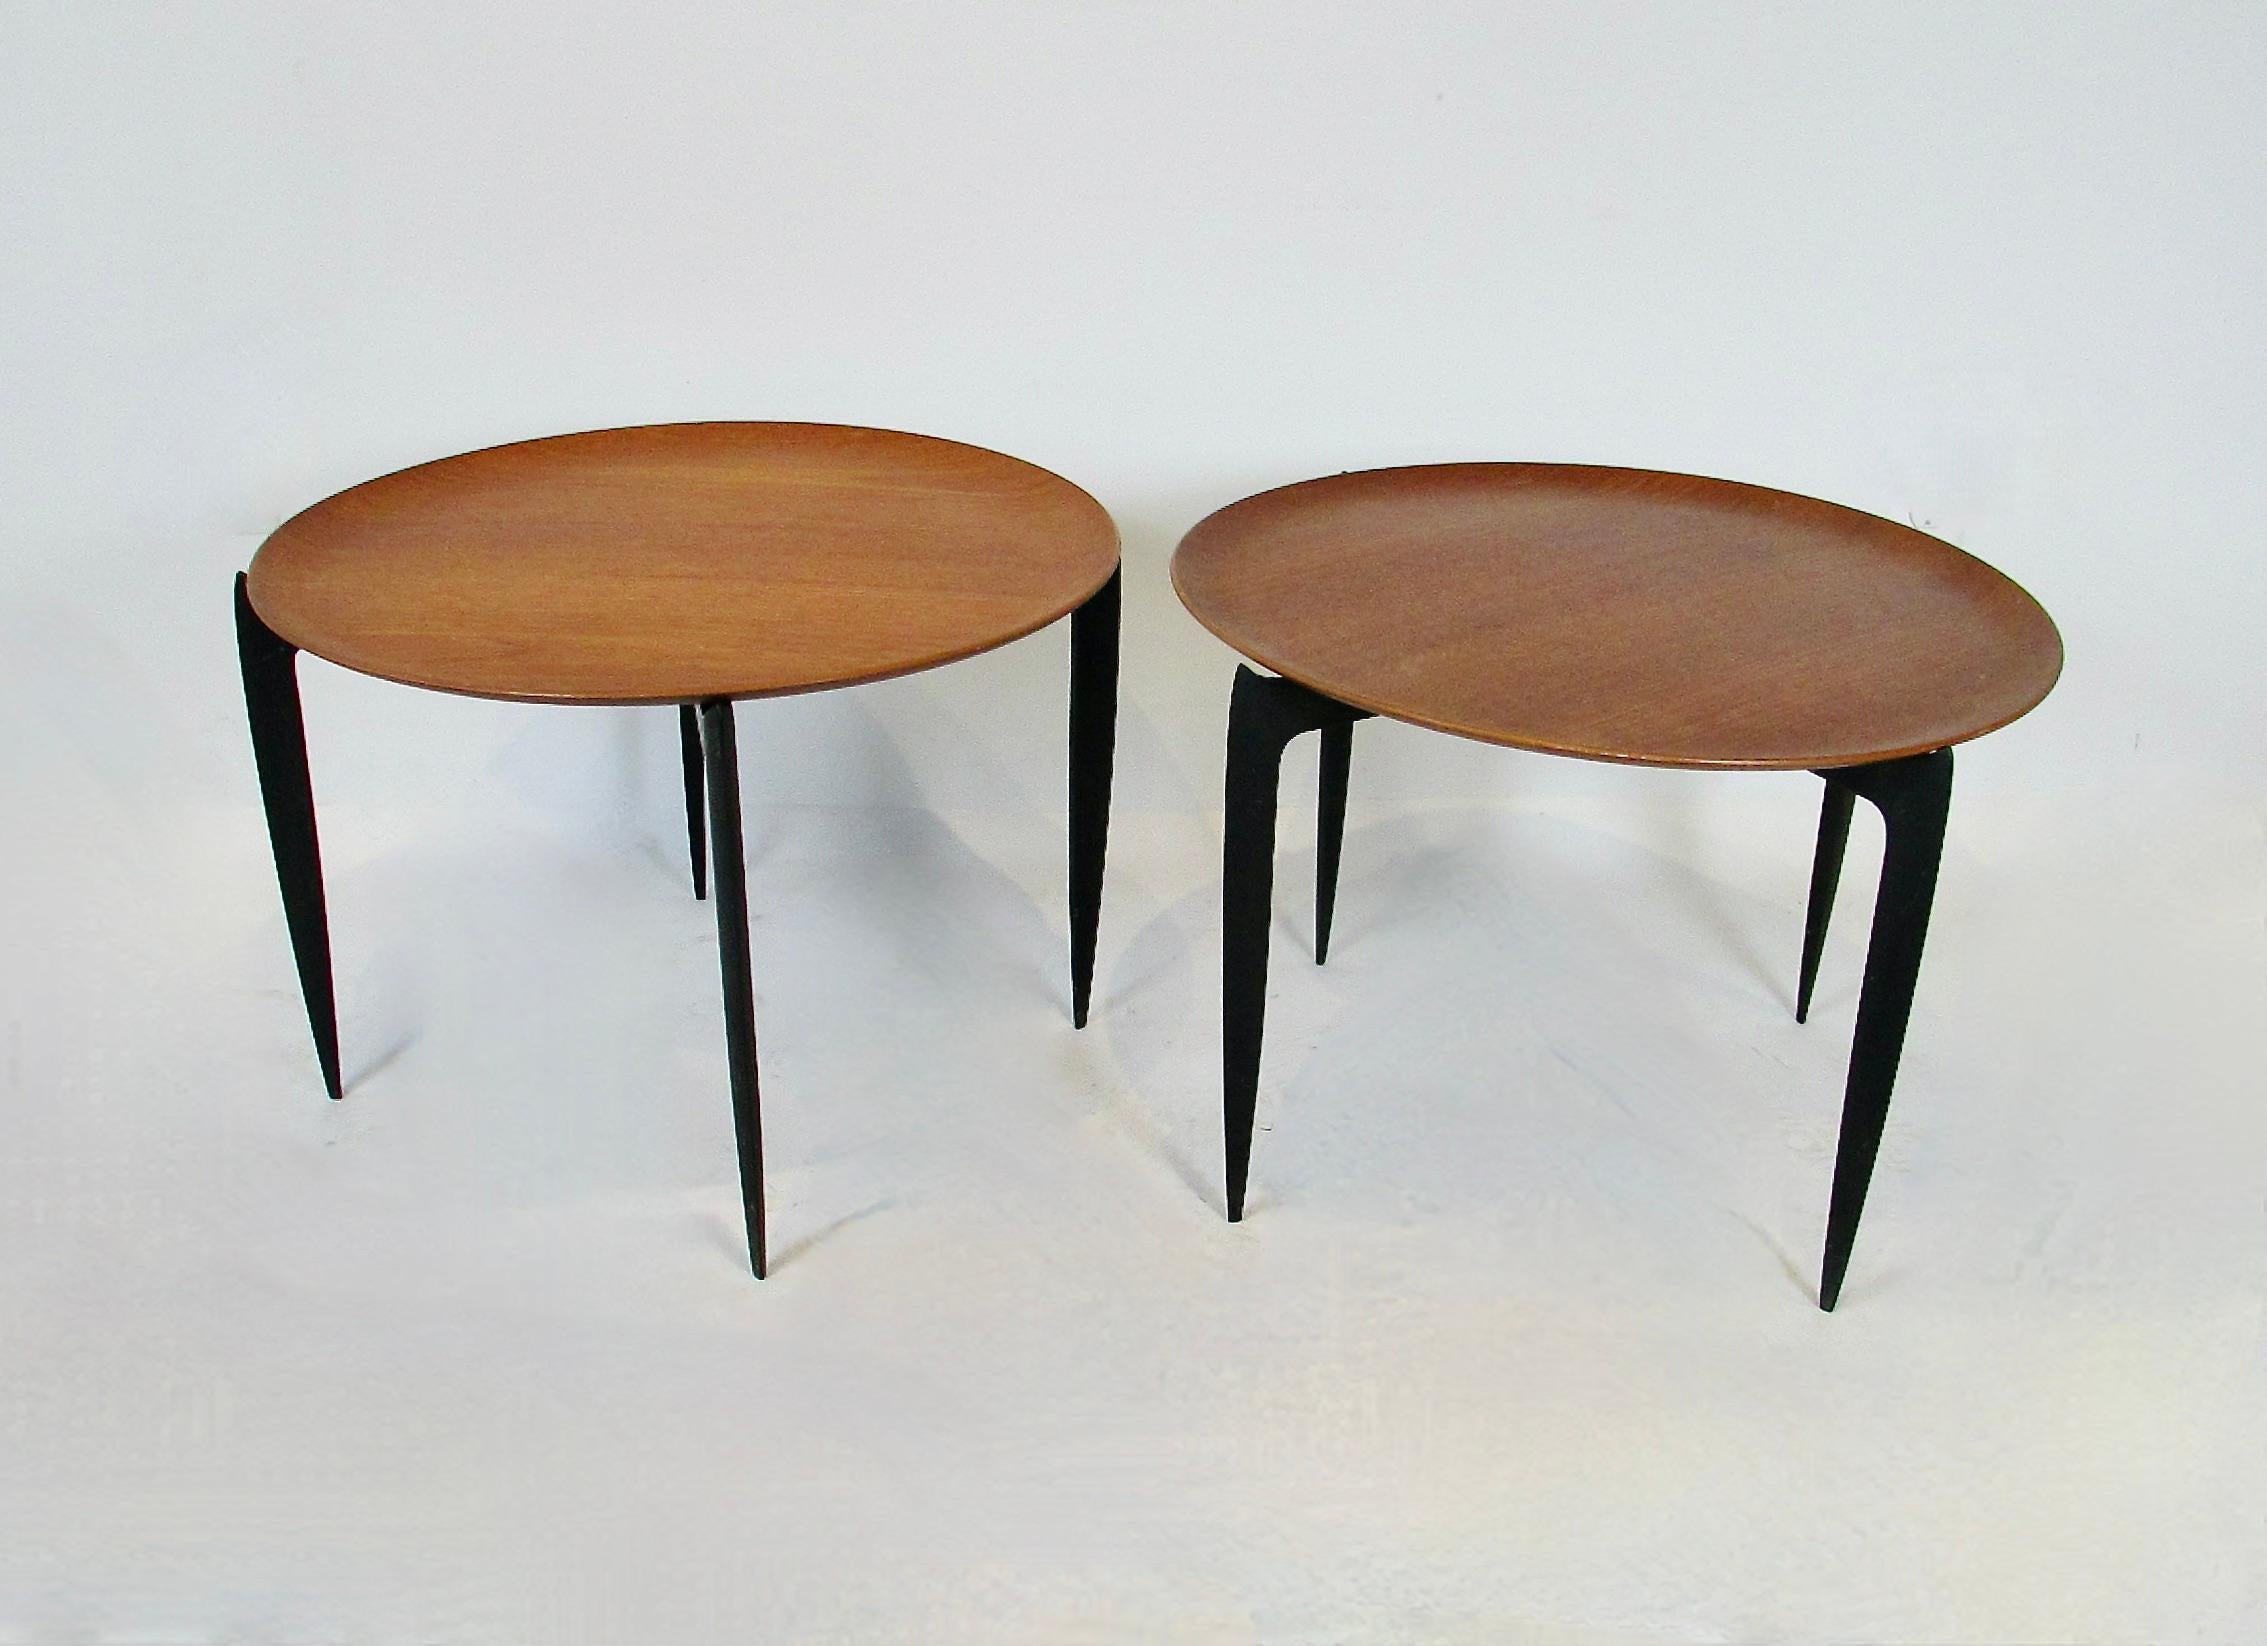 Paire de tables-plateaux danoises en teck (Modèle 4508) conçues  par Svend Åge Willumsen et Hans Hansen pour Fritz Hansen en 1958 . Excellente représentation de la forme et de la fonction,  à la fois pratique et bien conçu, tout en conservant